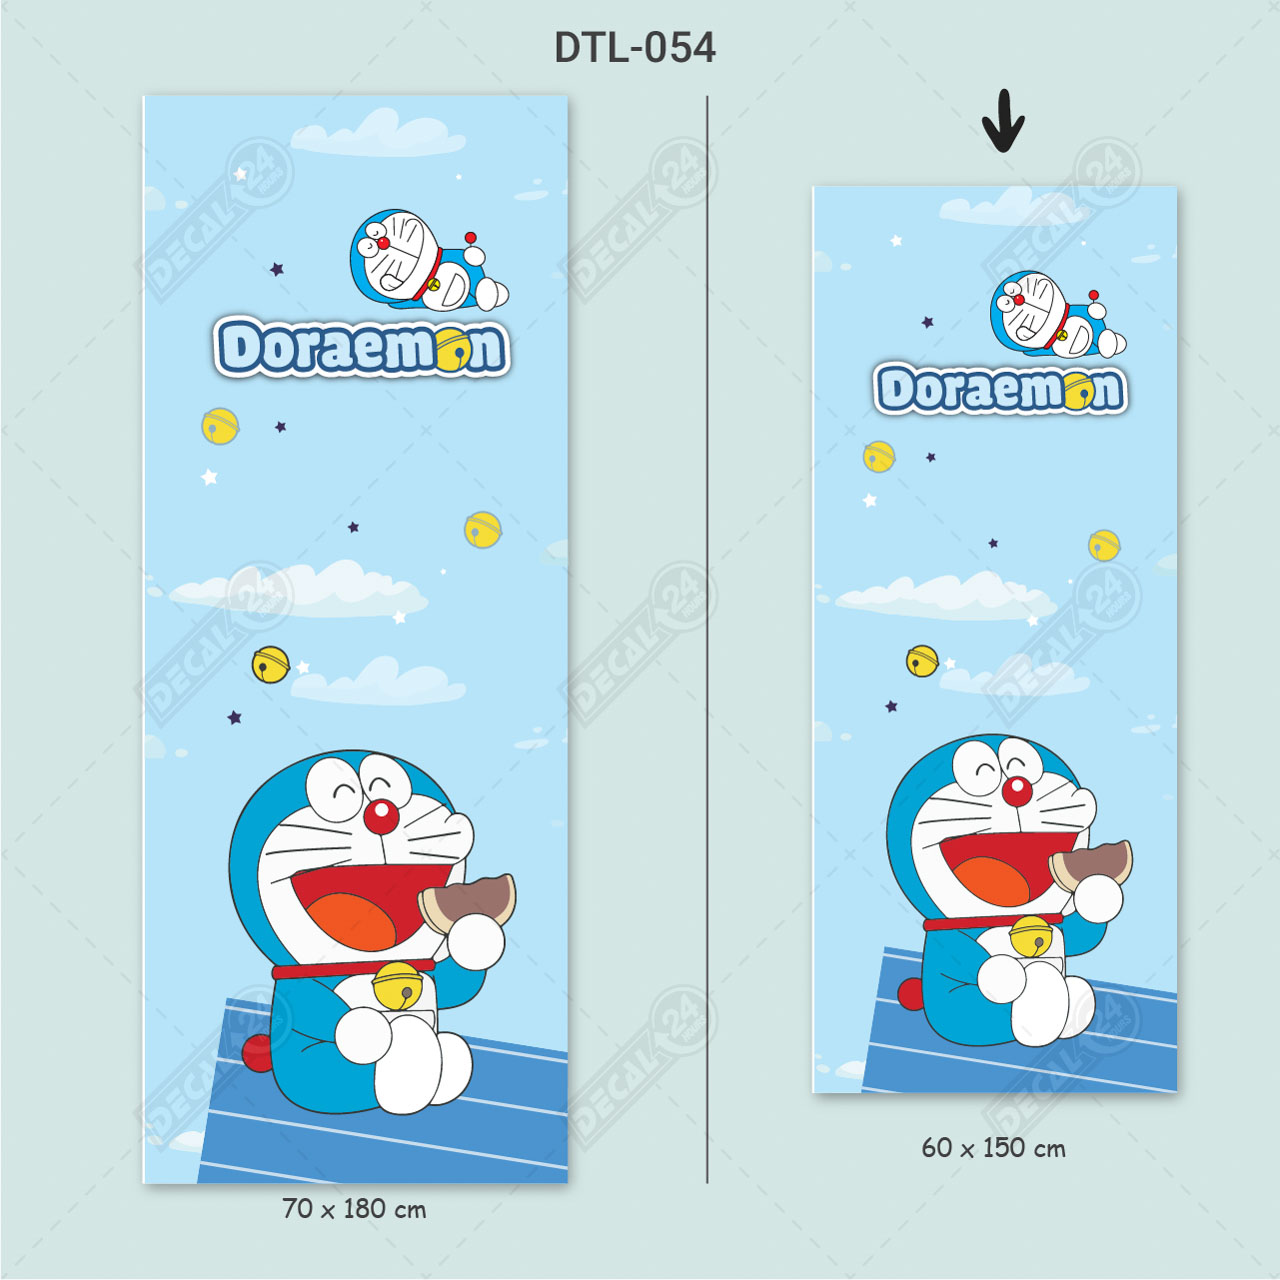 Decal Tủ Lạnh: Tủ lạnh của bạn đang trông nhàm chán và tẻ nhạt? Hãy làm mới nó với những bộ decal Doraemon đầy màu sắc và sinh động! Với những hình ảnh Doraemon đáng yêu và ngộ nghĩnh trên tủ lạnh, bạn sẽ cảm thấy tinh thần thoải mái và vui vẻ hơn với mỗi lần mở cửa tủ lạnh!